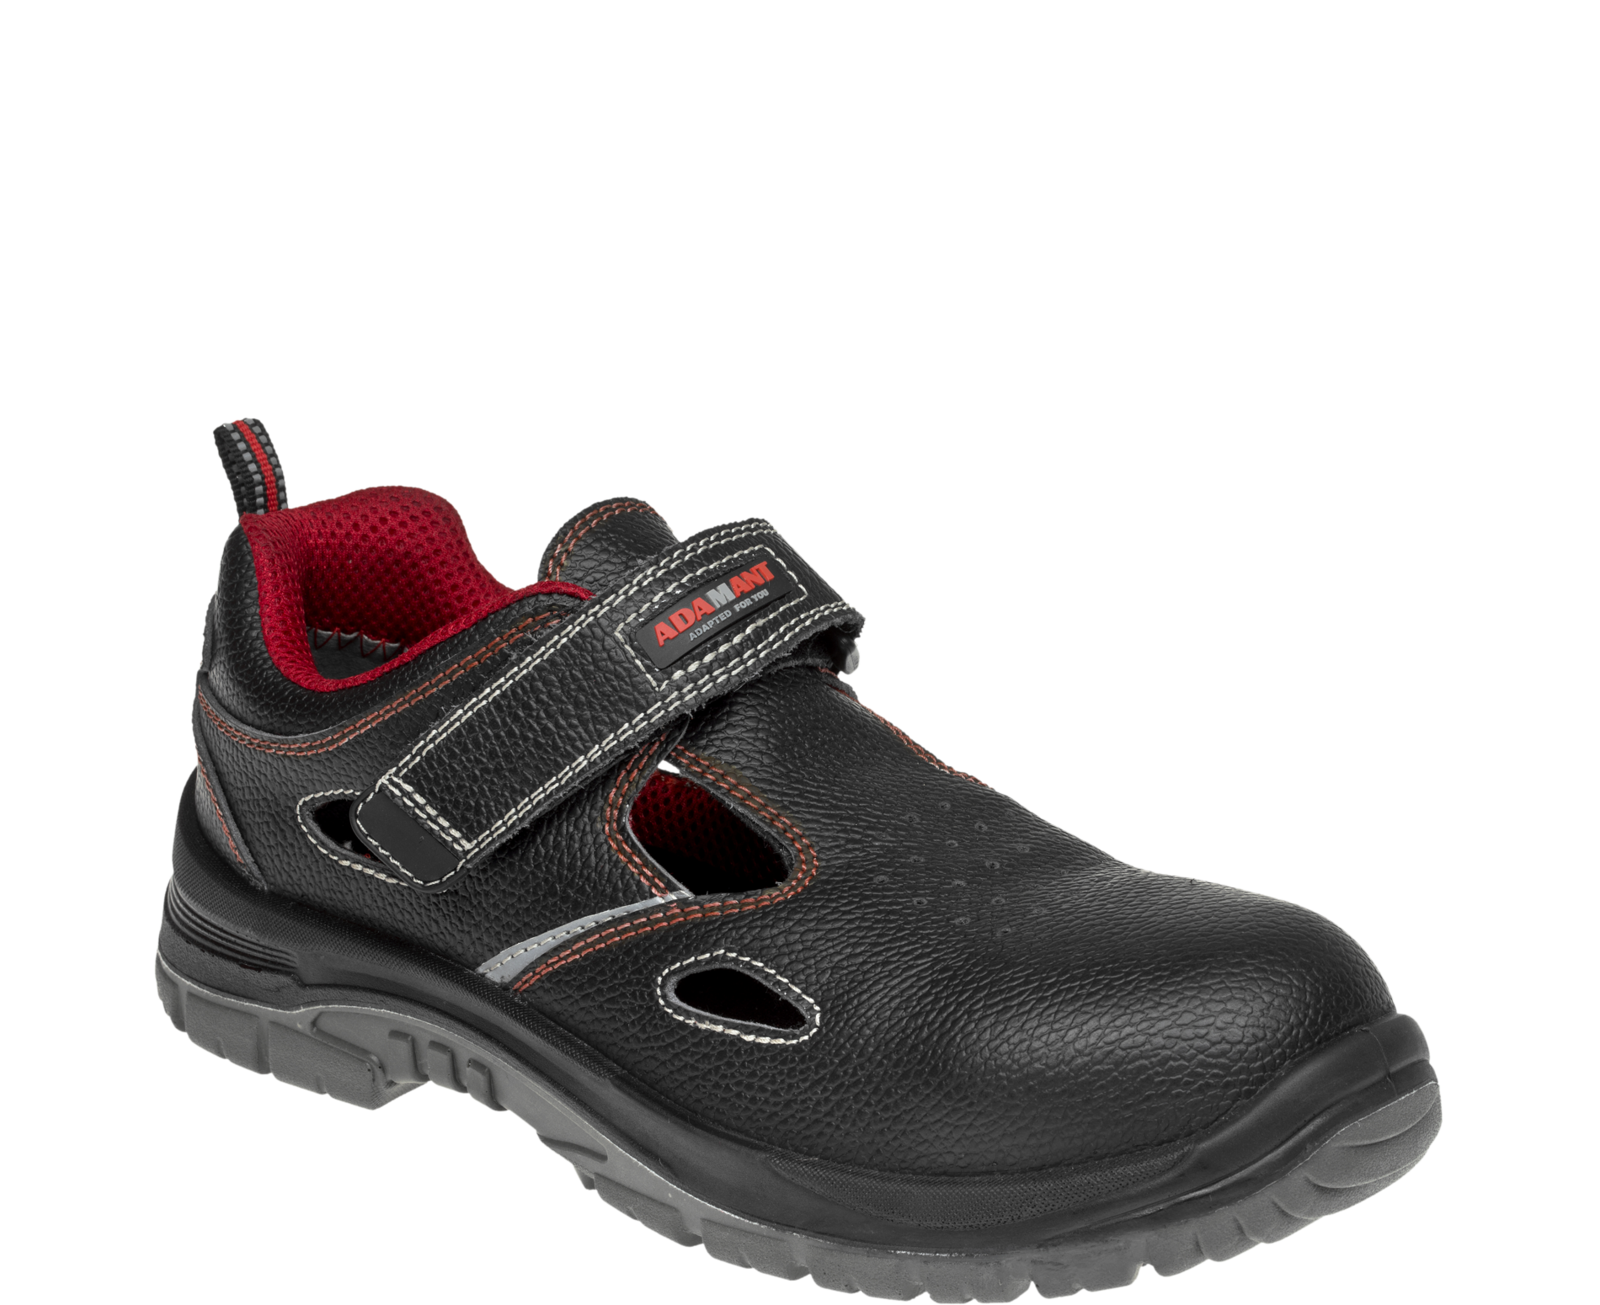 Bezpečnostné sandále Adamant Non Metallic S1 SRC - veľkosť: 44, farba: čierna/červená